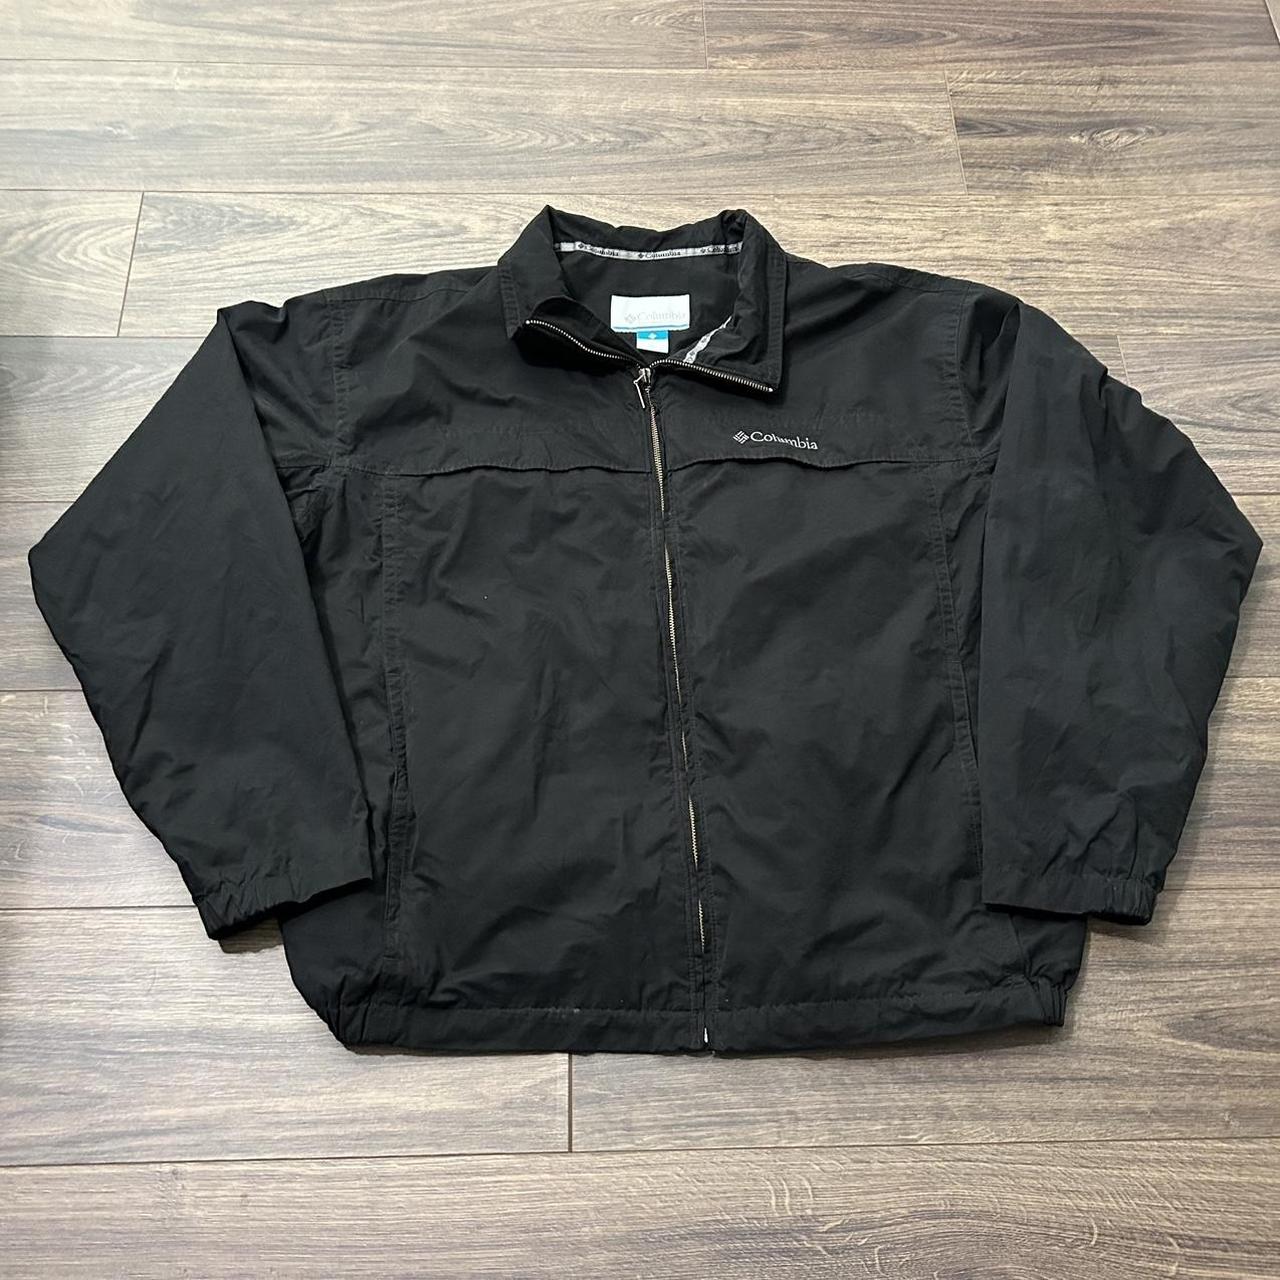 Colombia Black Winter Jacket Size XL - Depop